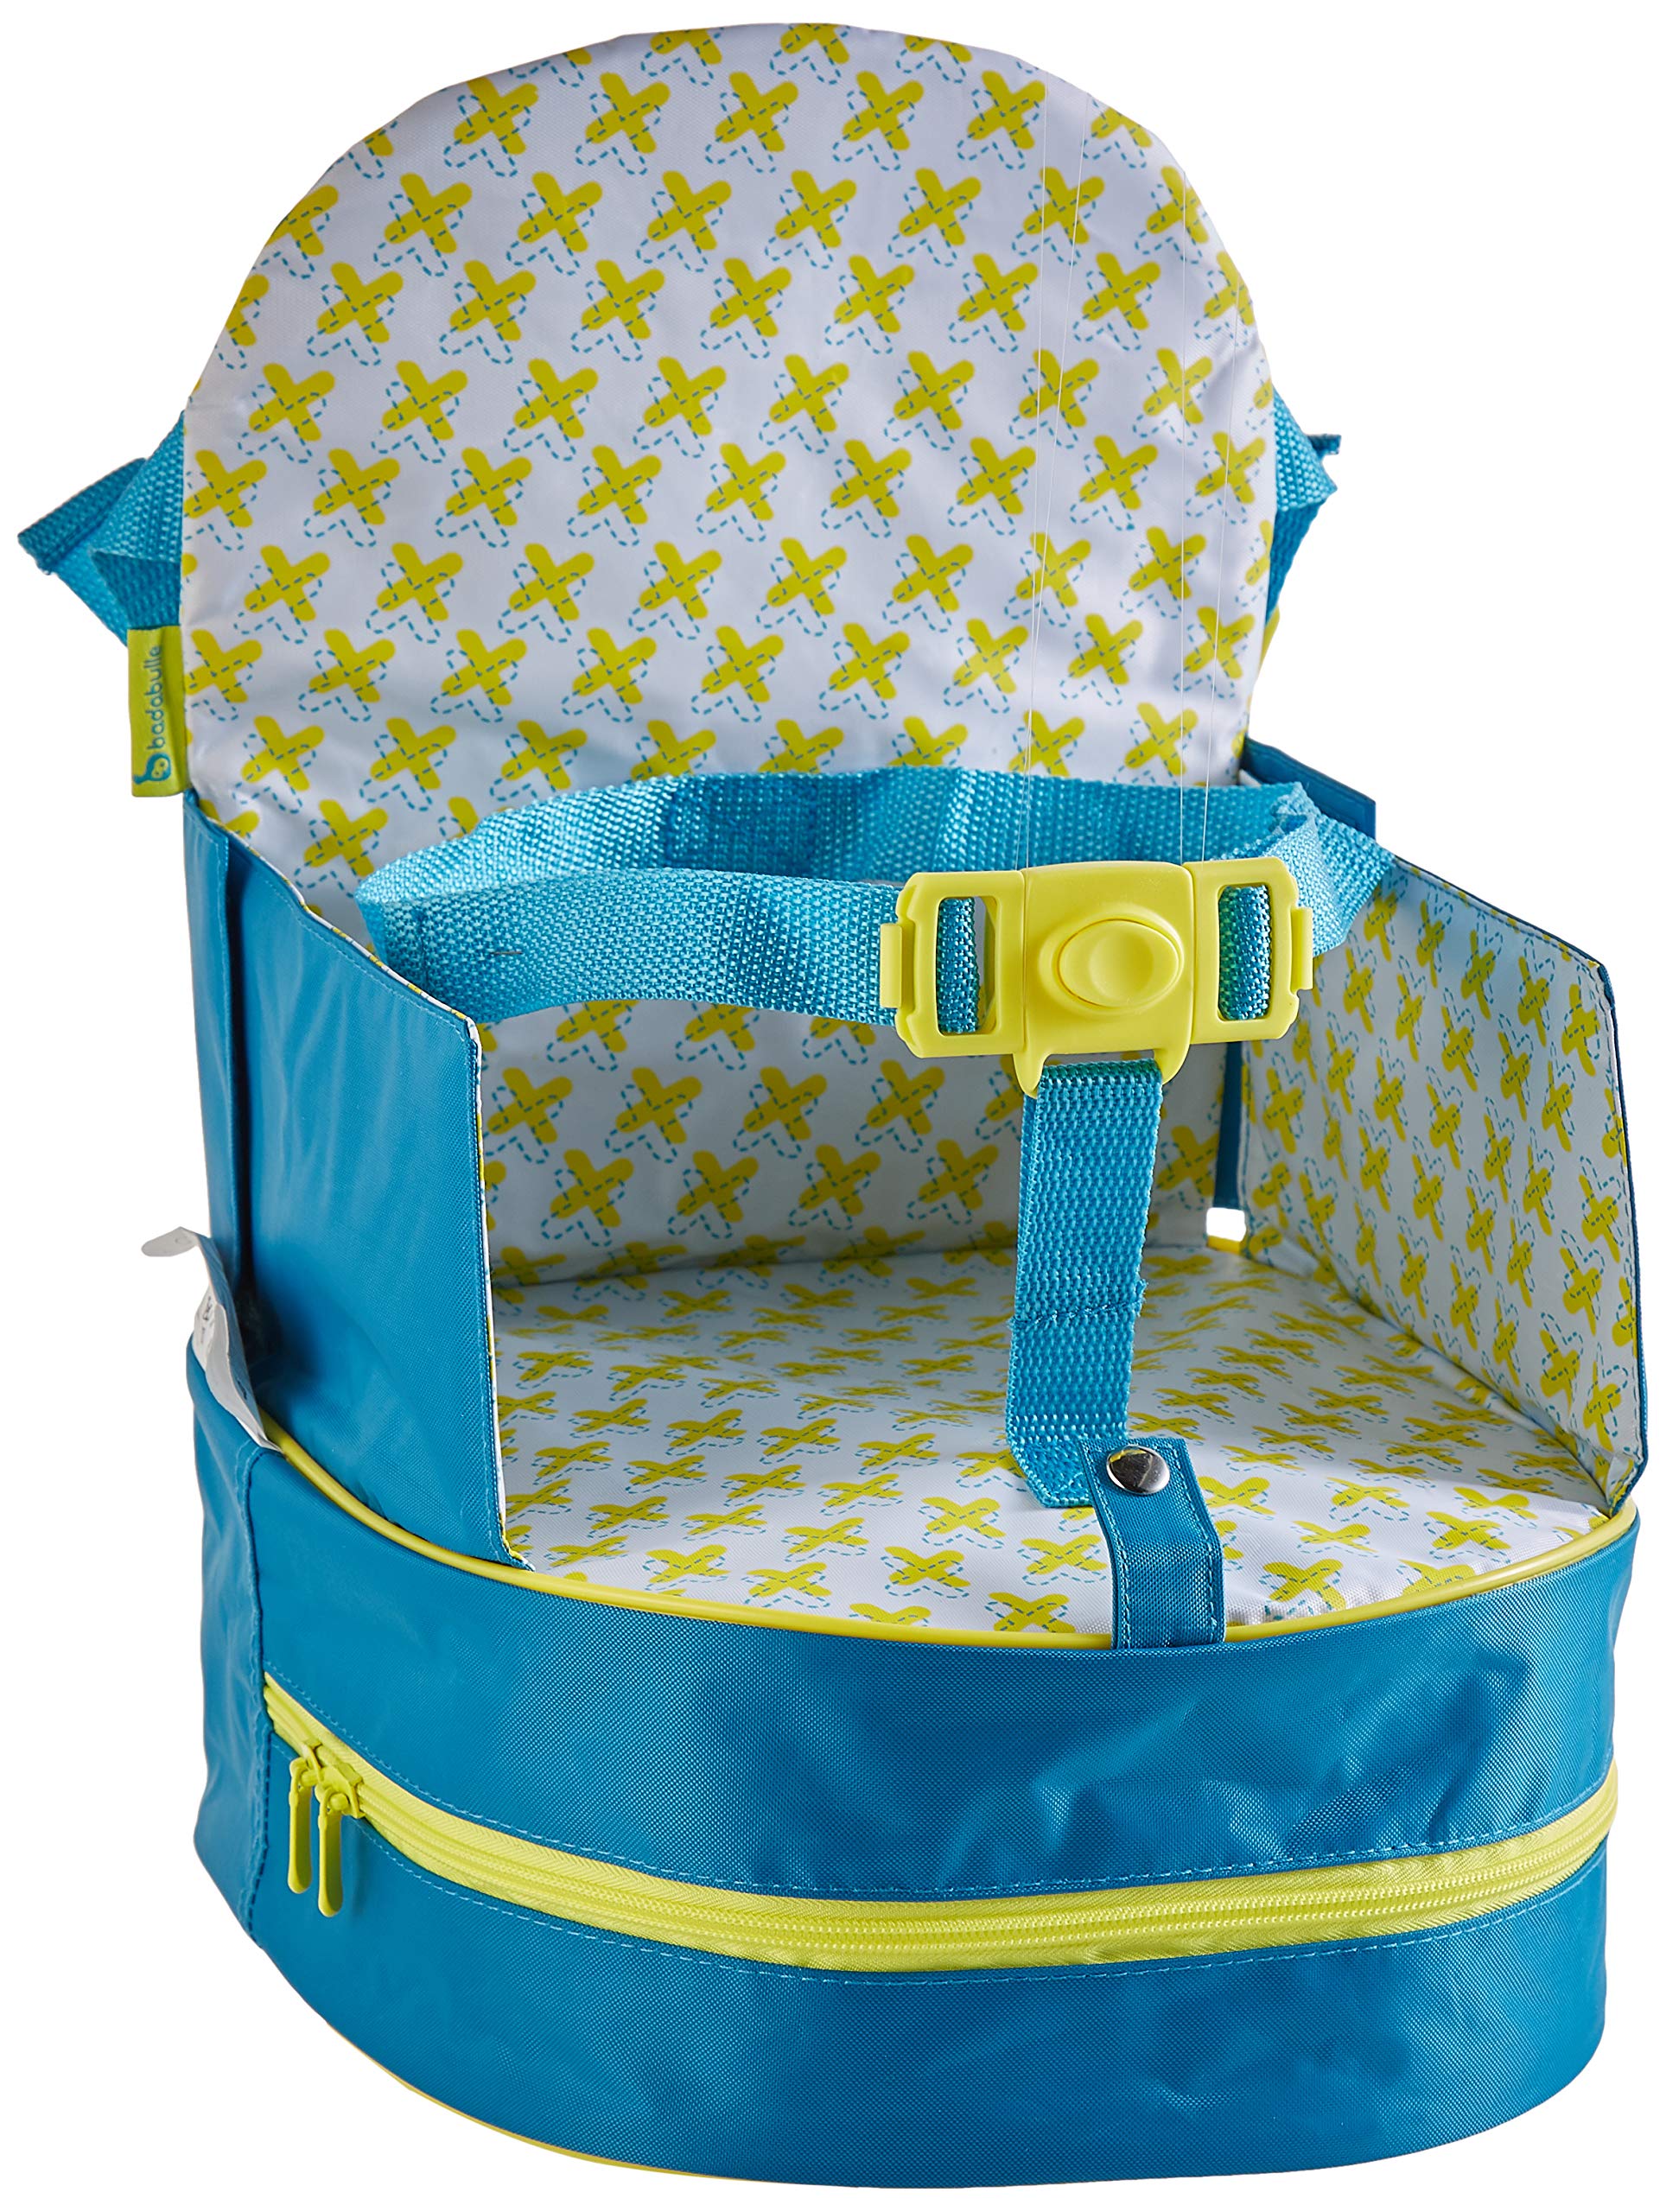 Badabulle Sitzerhöhung, für unterwegs und für Stuhl, als Rucksack tragbar, türkis, 10 cm, blau